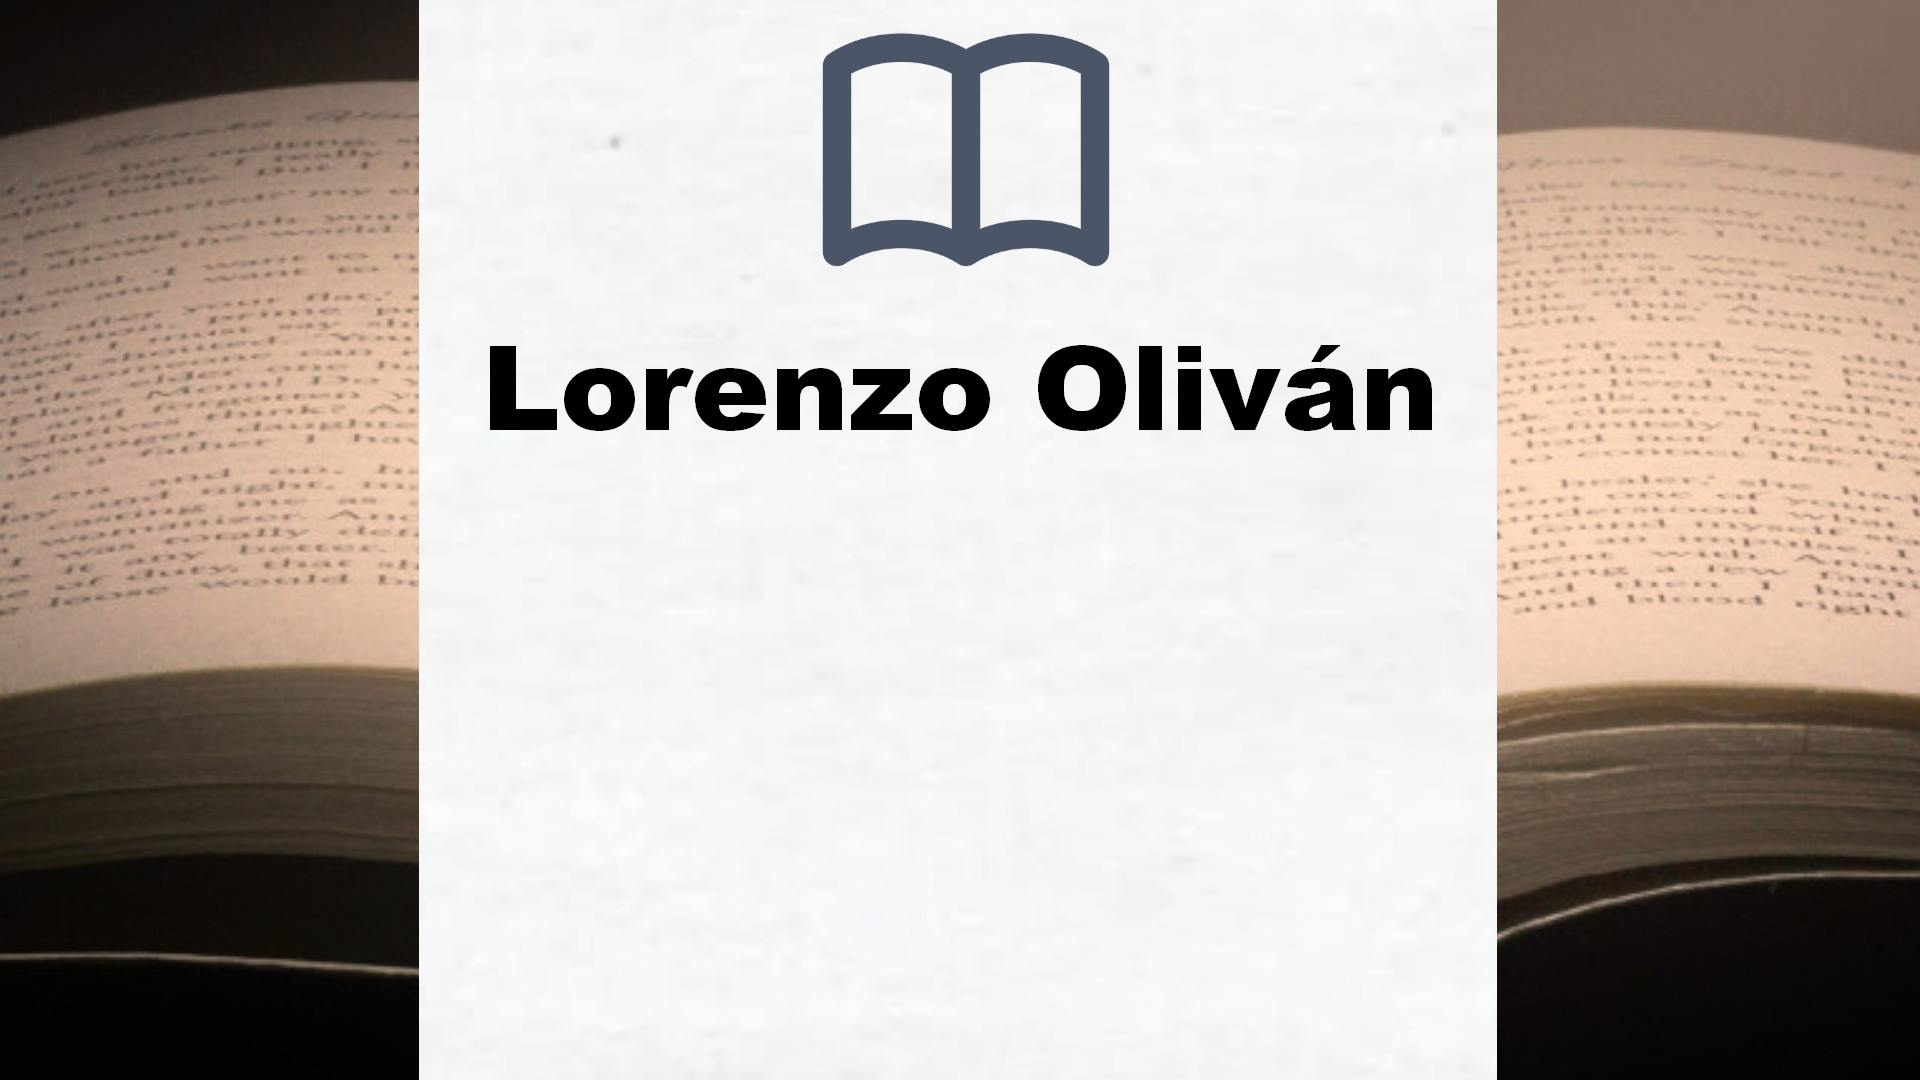 Libros Lorenzo Oliván